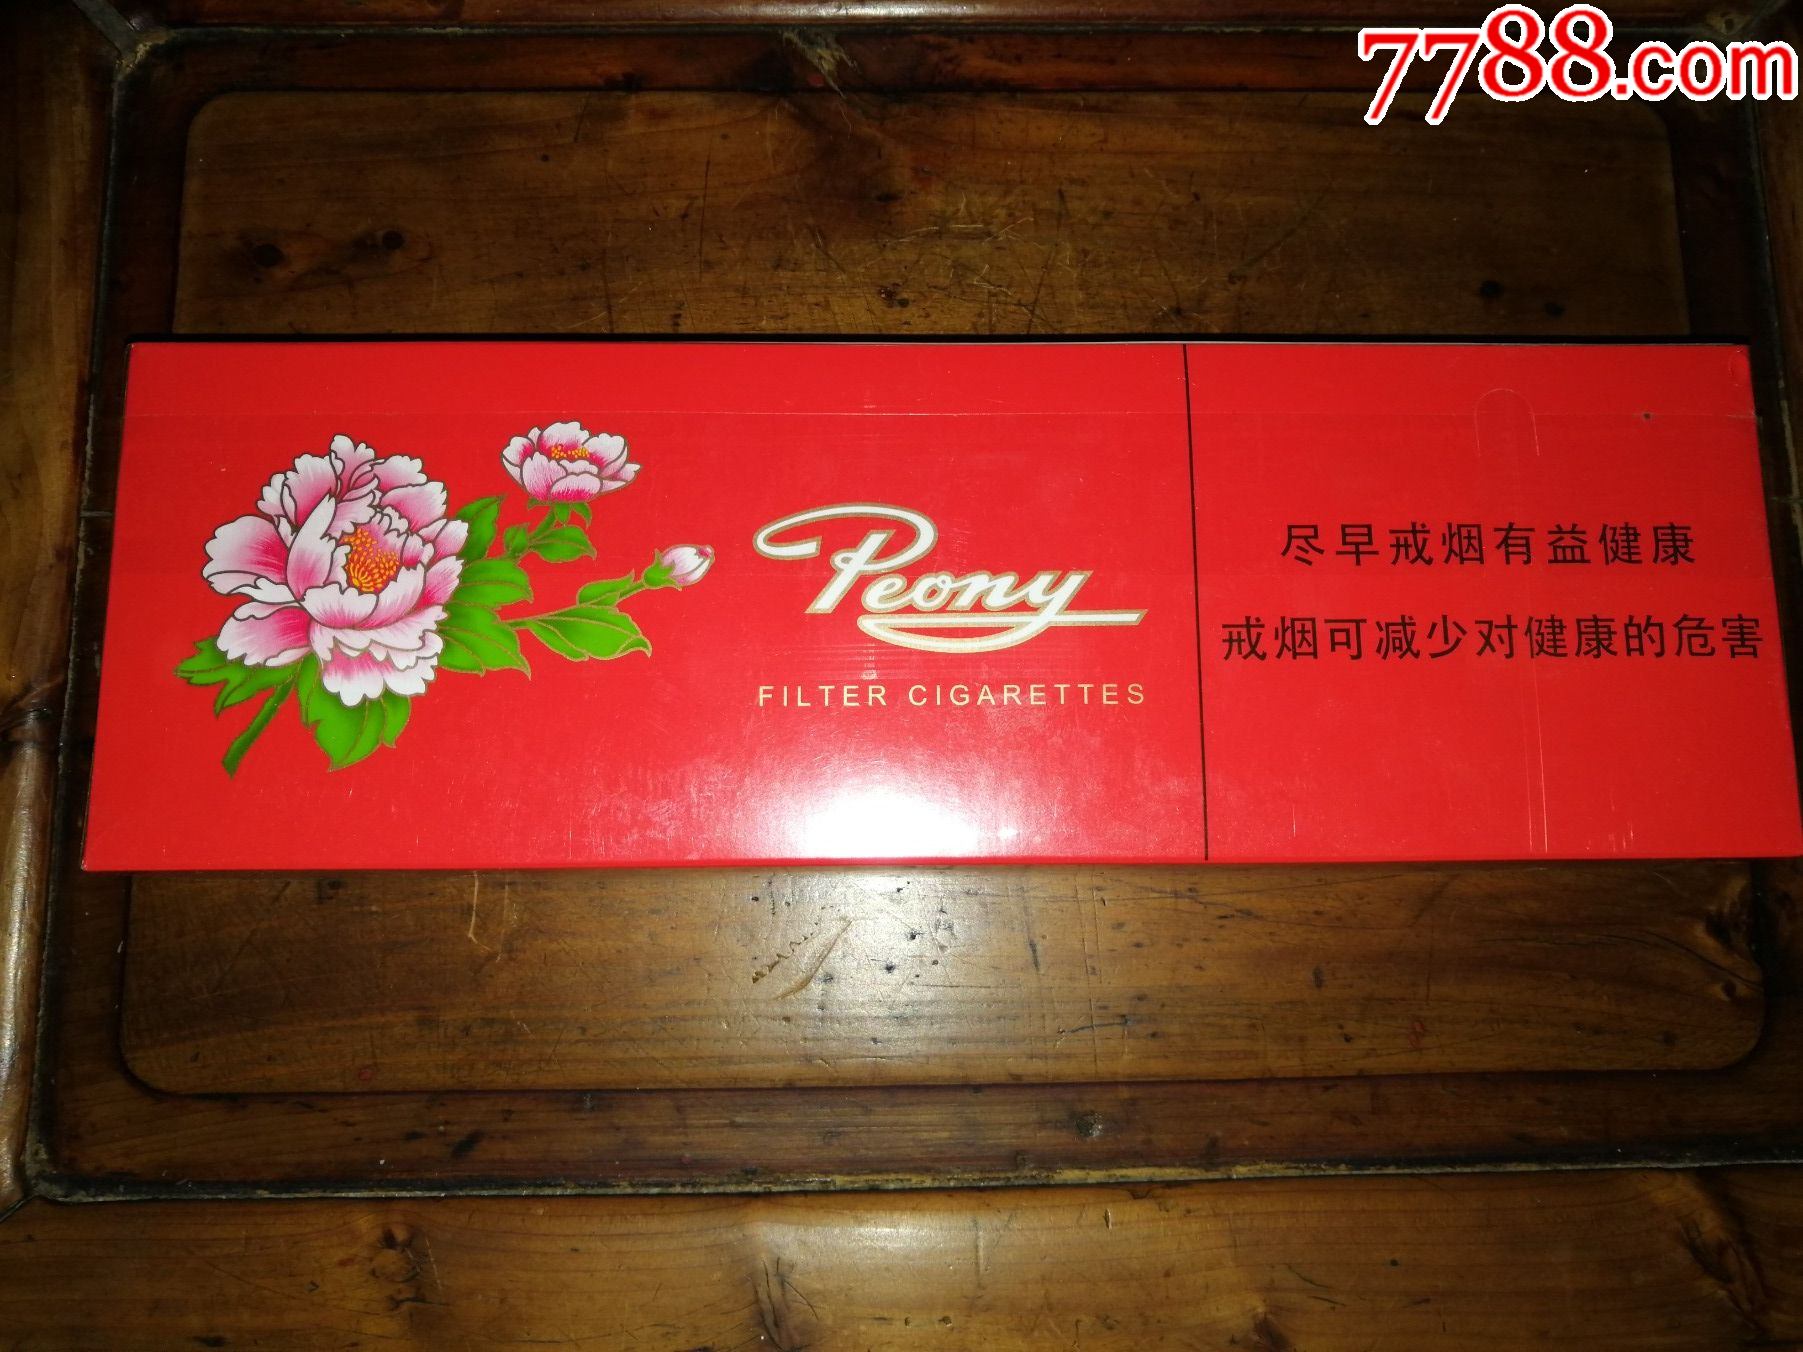 (希缺产品收藏)上海牡丹香烟(红牡丹软包333整条)最后一件便宜出包邮